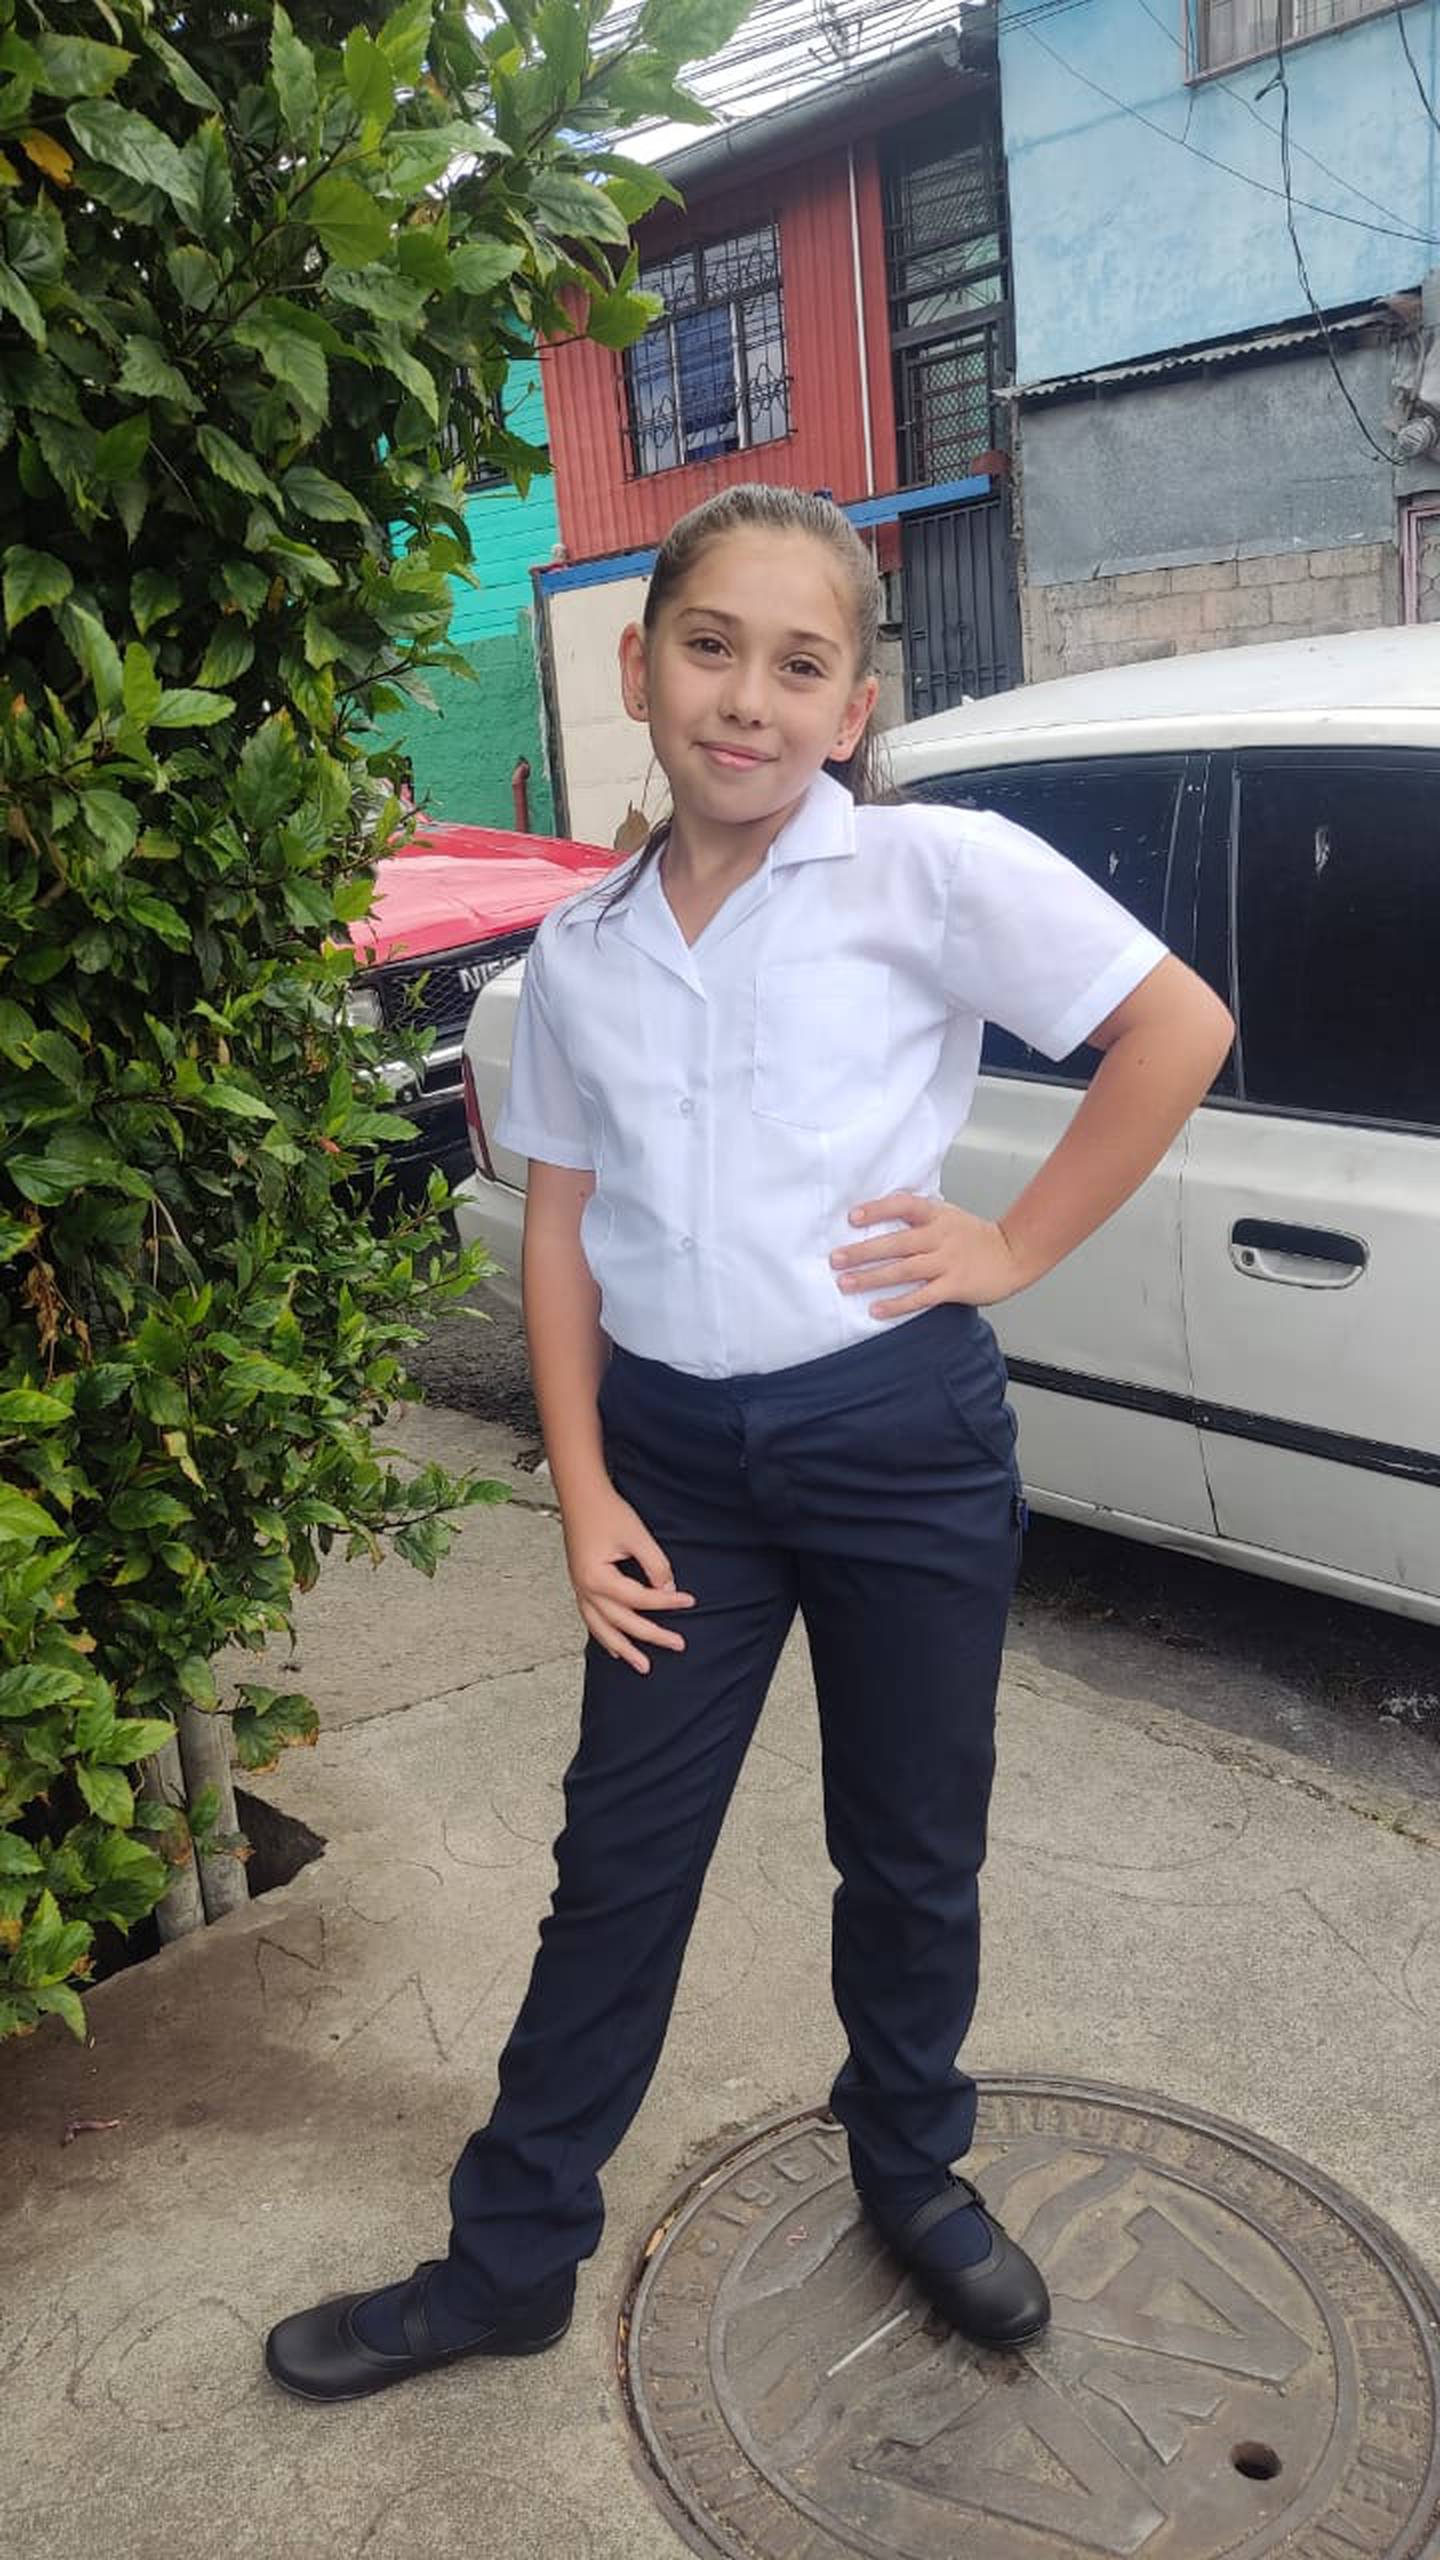 Jelani Mora Aguilar tiene 10 años, está en quinto grado (en la 5-3) de la Escuela Central de San Sebastián en San José y este 19 de mayo luchará por ser la próxima presidenta de ese centro educativo